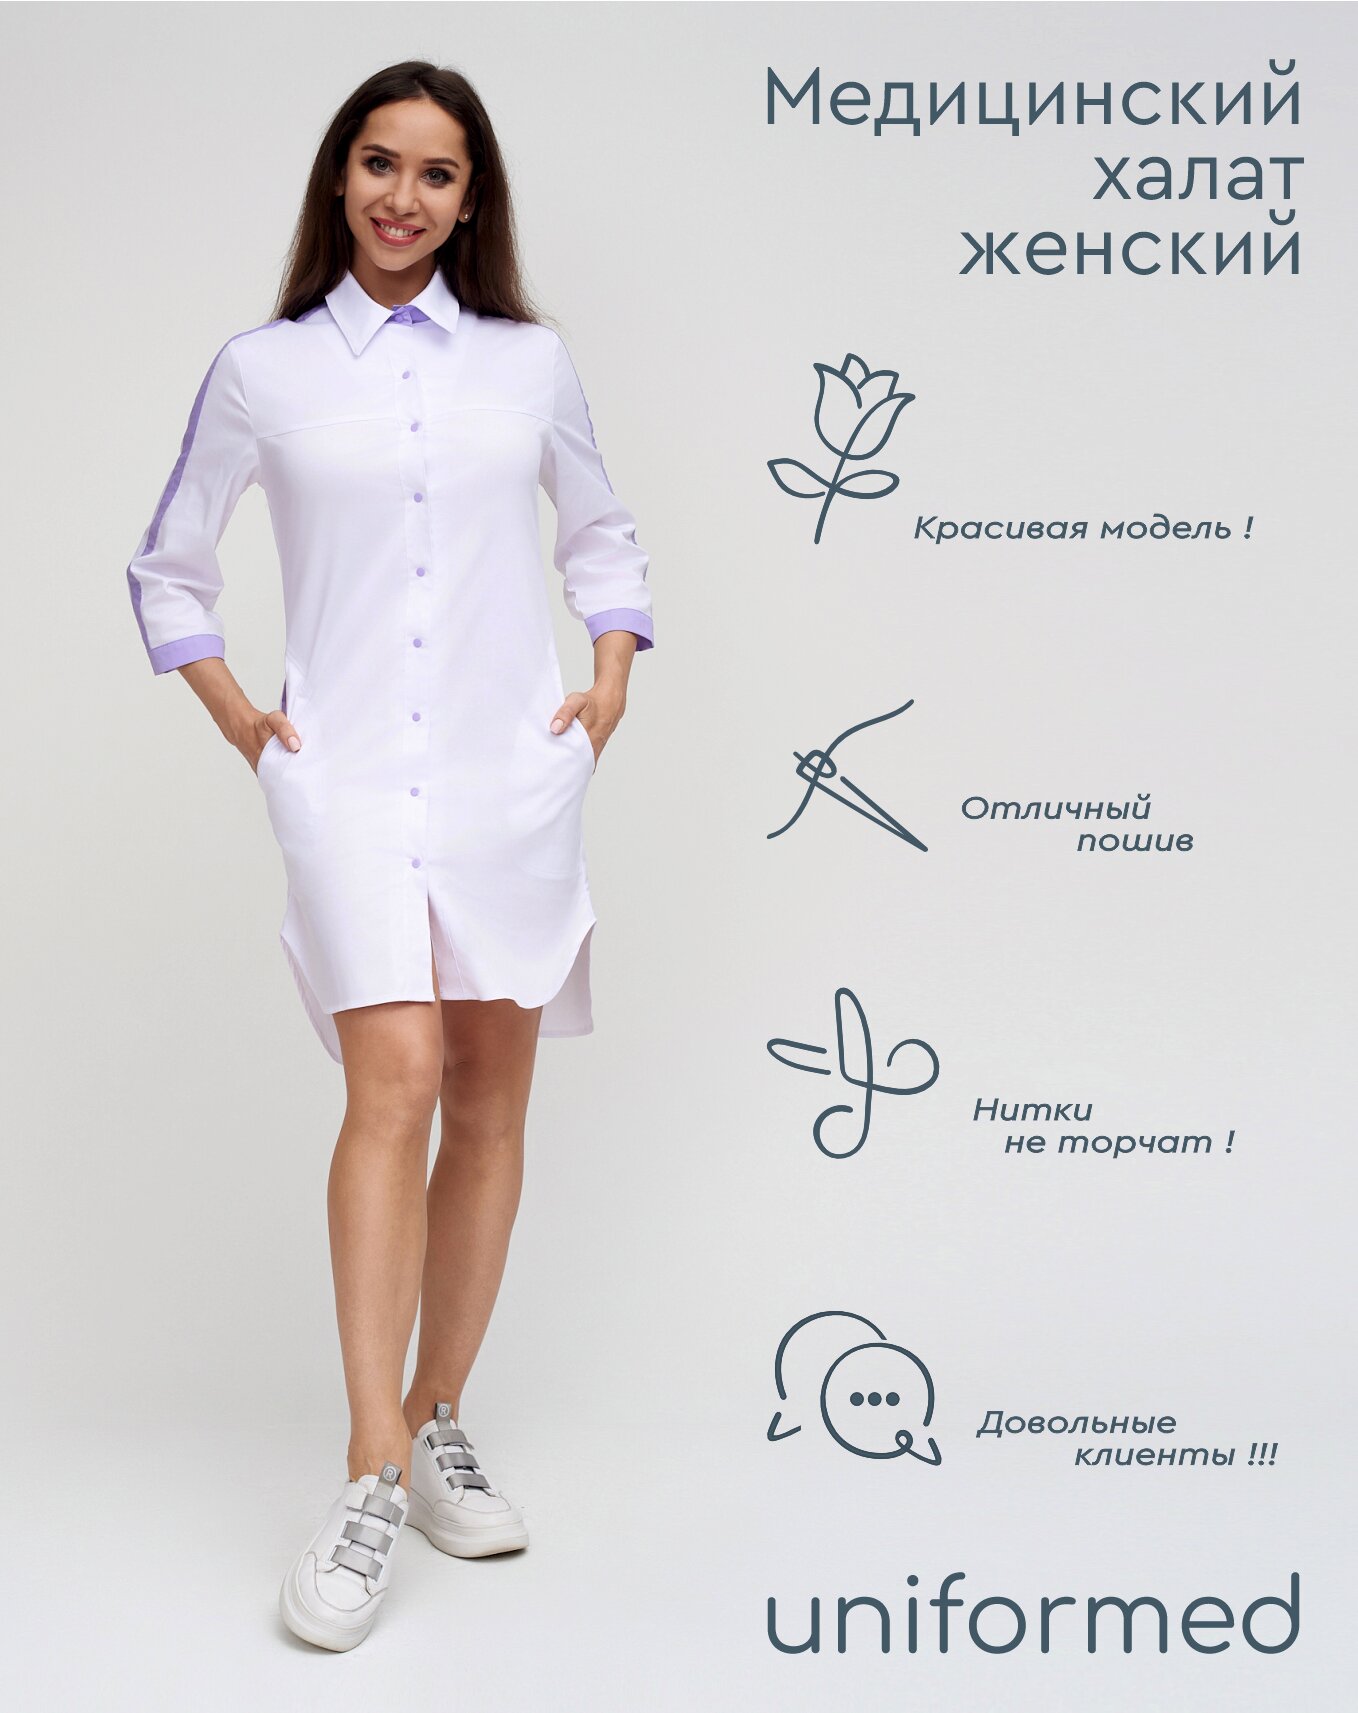 Медицинский женский халат 370.4.2 Uniformed, ткань сатори стрейч, укороченный, рукав 3/4, на кнопках, цвет белый, отделка сиреневая, рост 170-176, размер 54